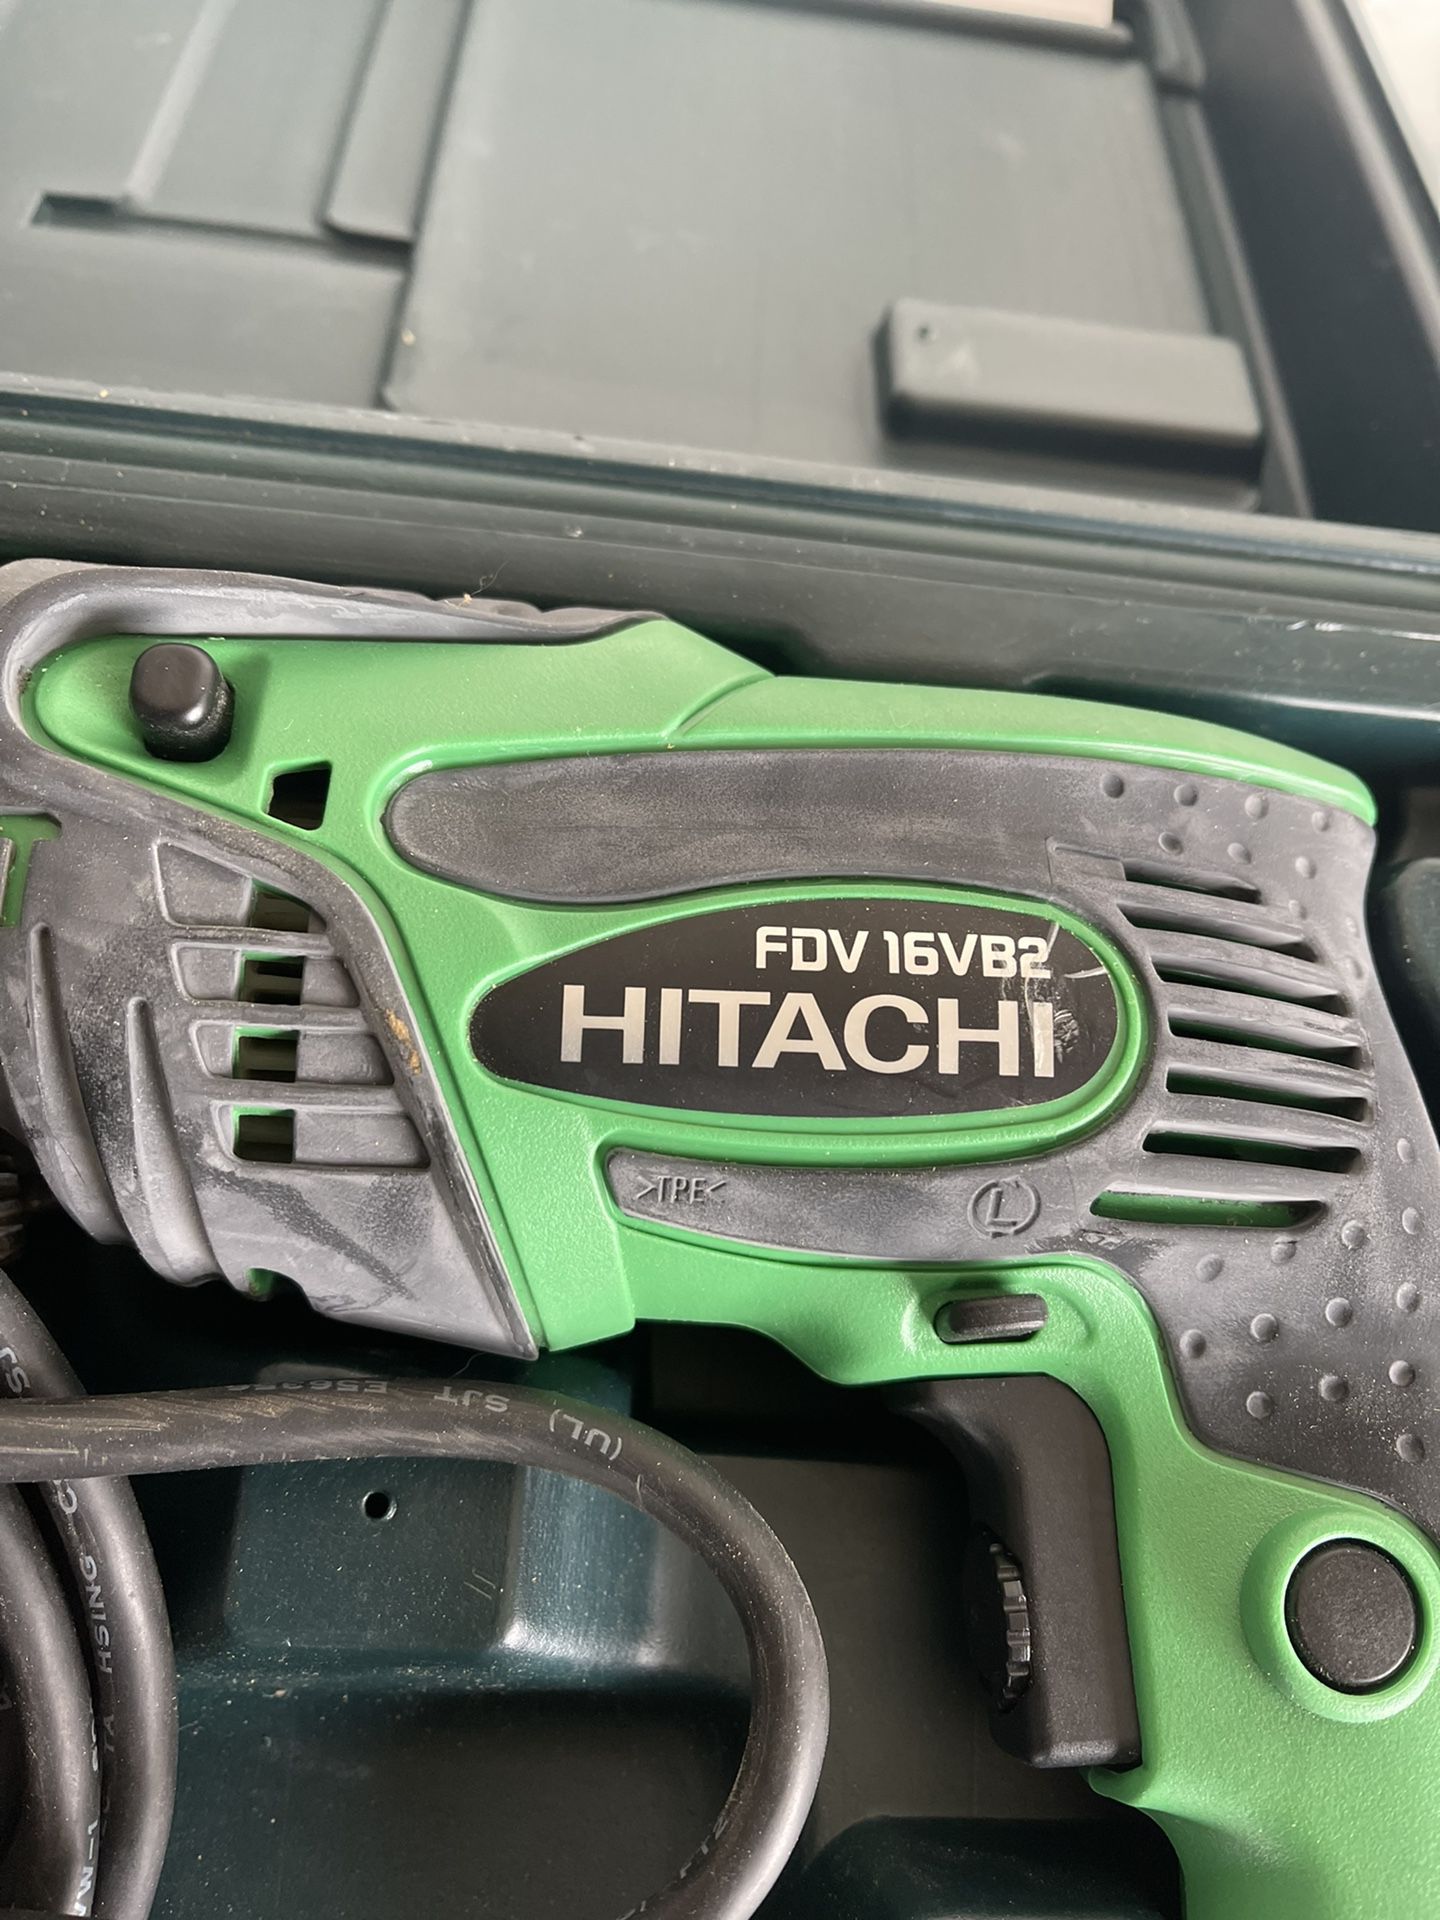 Hitachi 110 Volt Drill